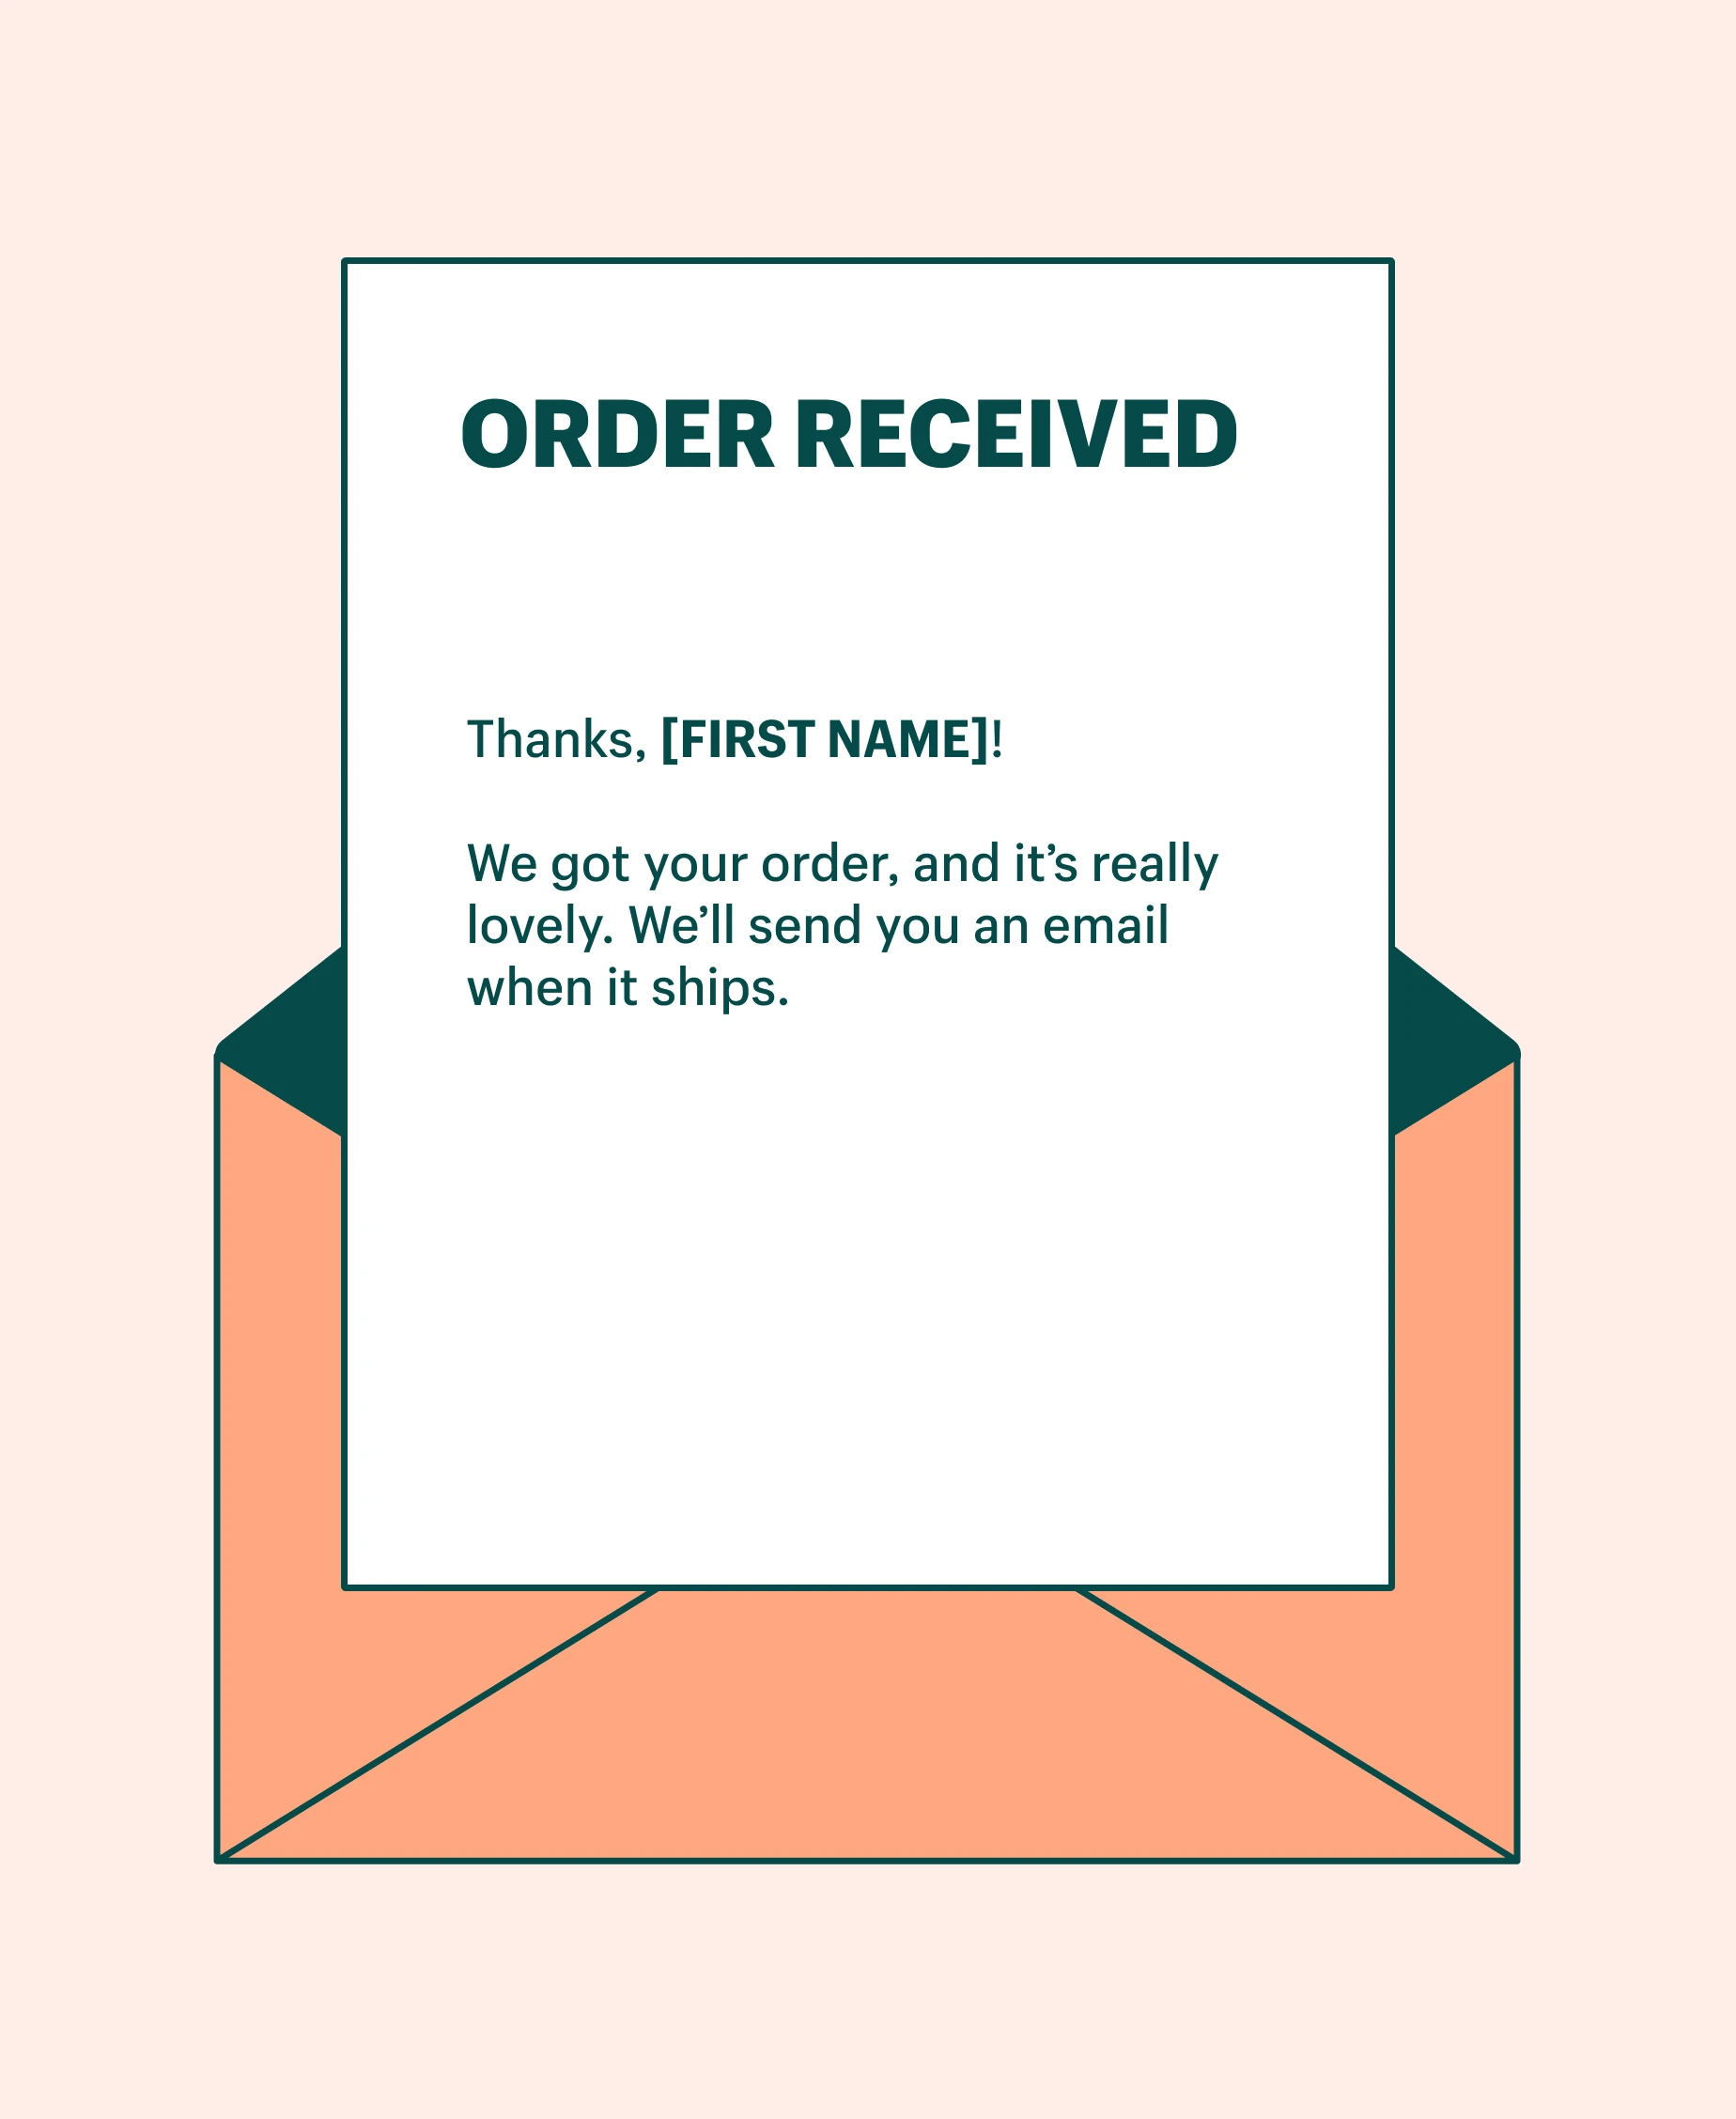 感谢顾客信任的简单句子模板：订单收到后